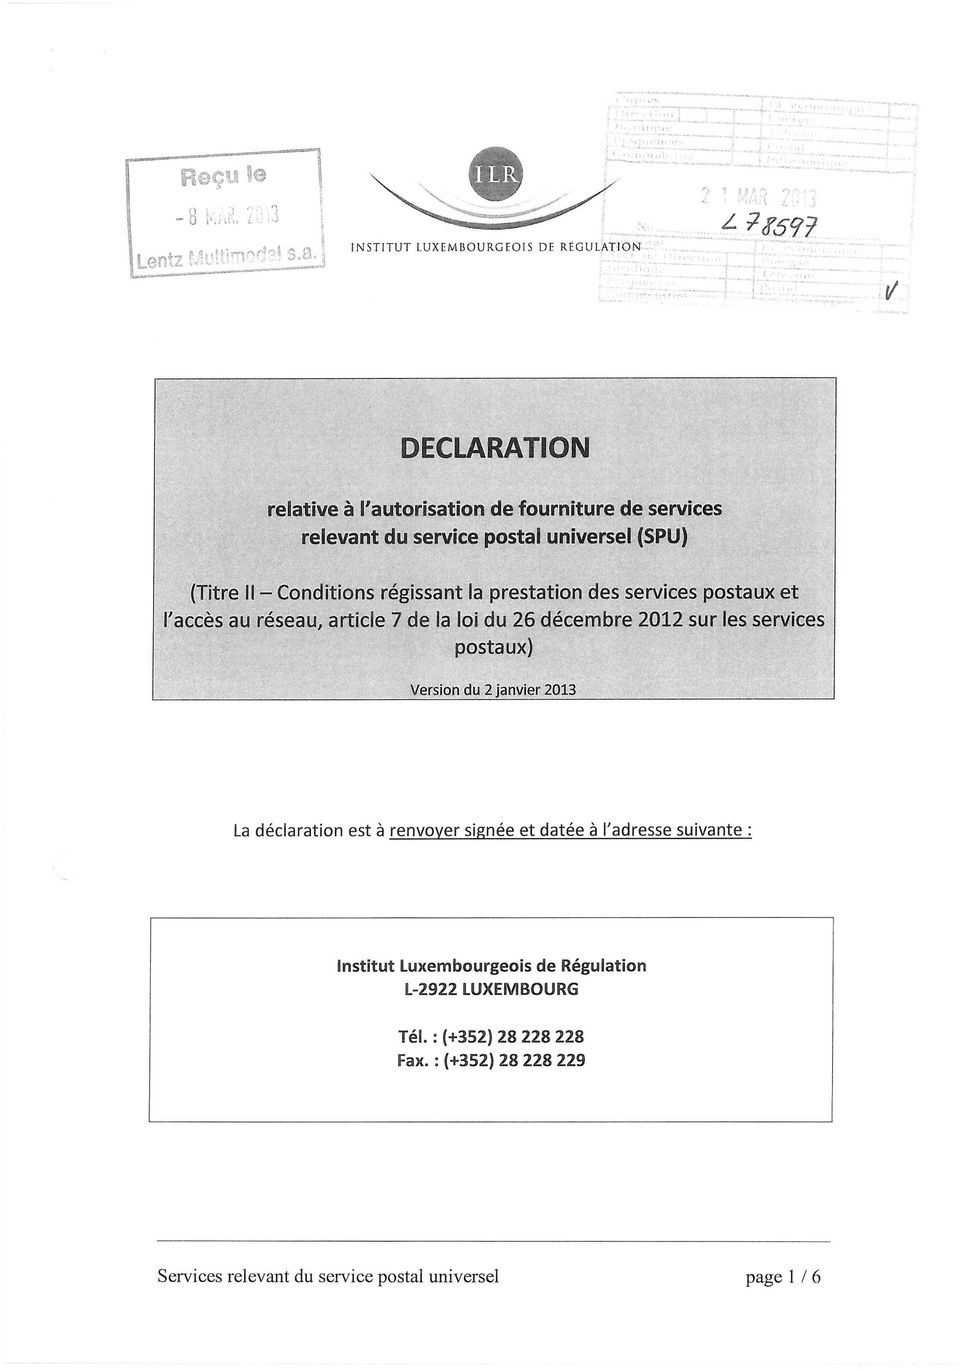 postaux) Version du 2 janvier 2013 La declaration est a renvover signee et datee a Tadresse suivante : Institut Luxembourgeois de